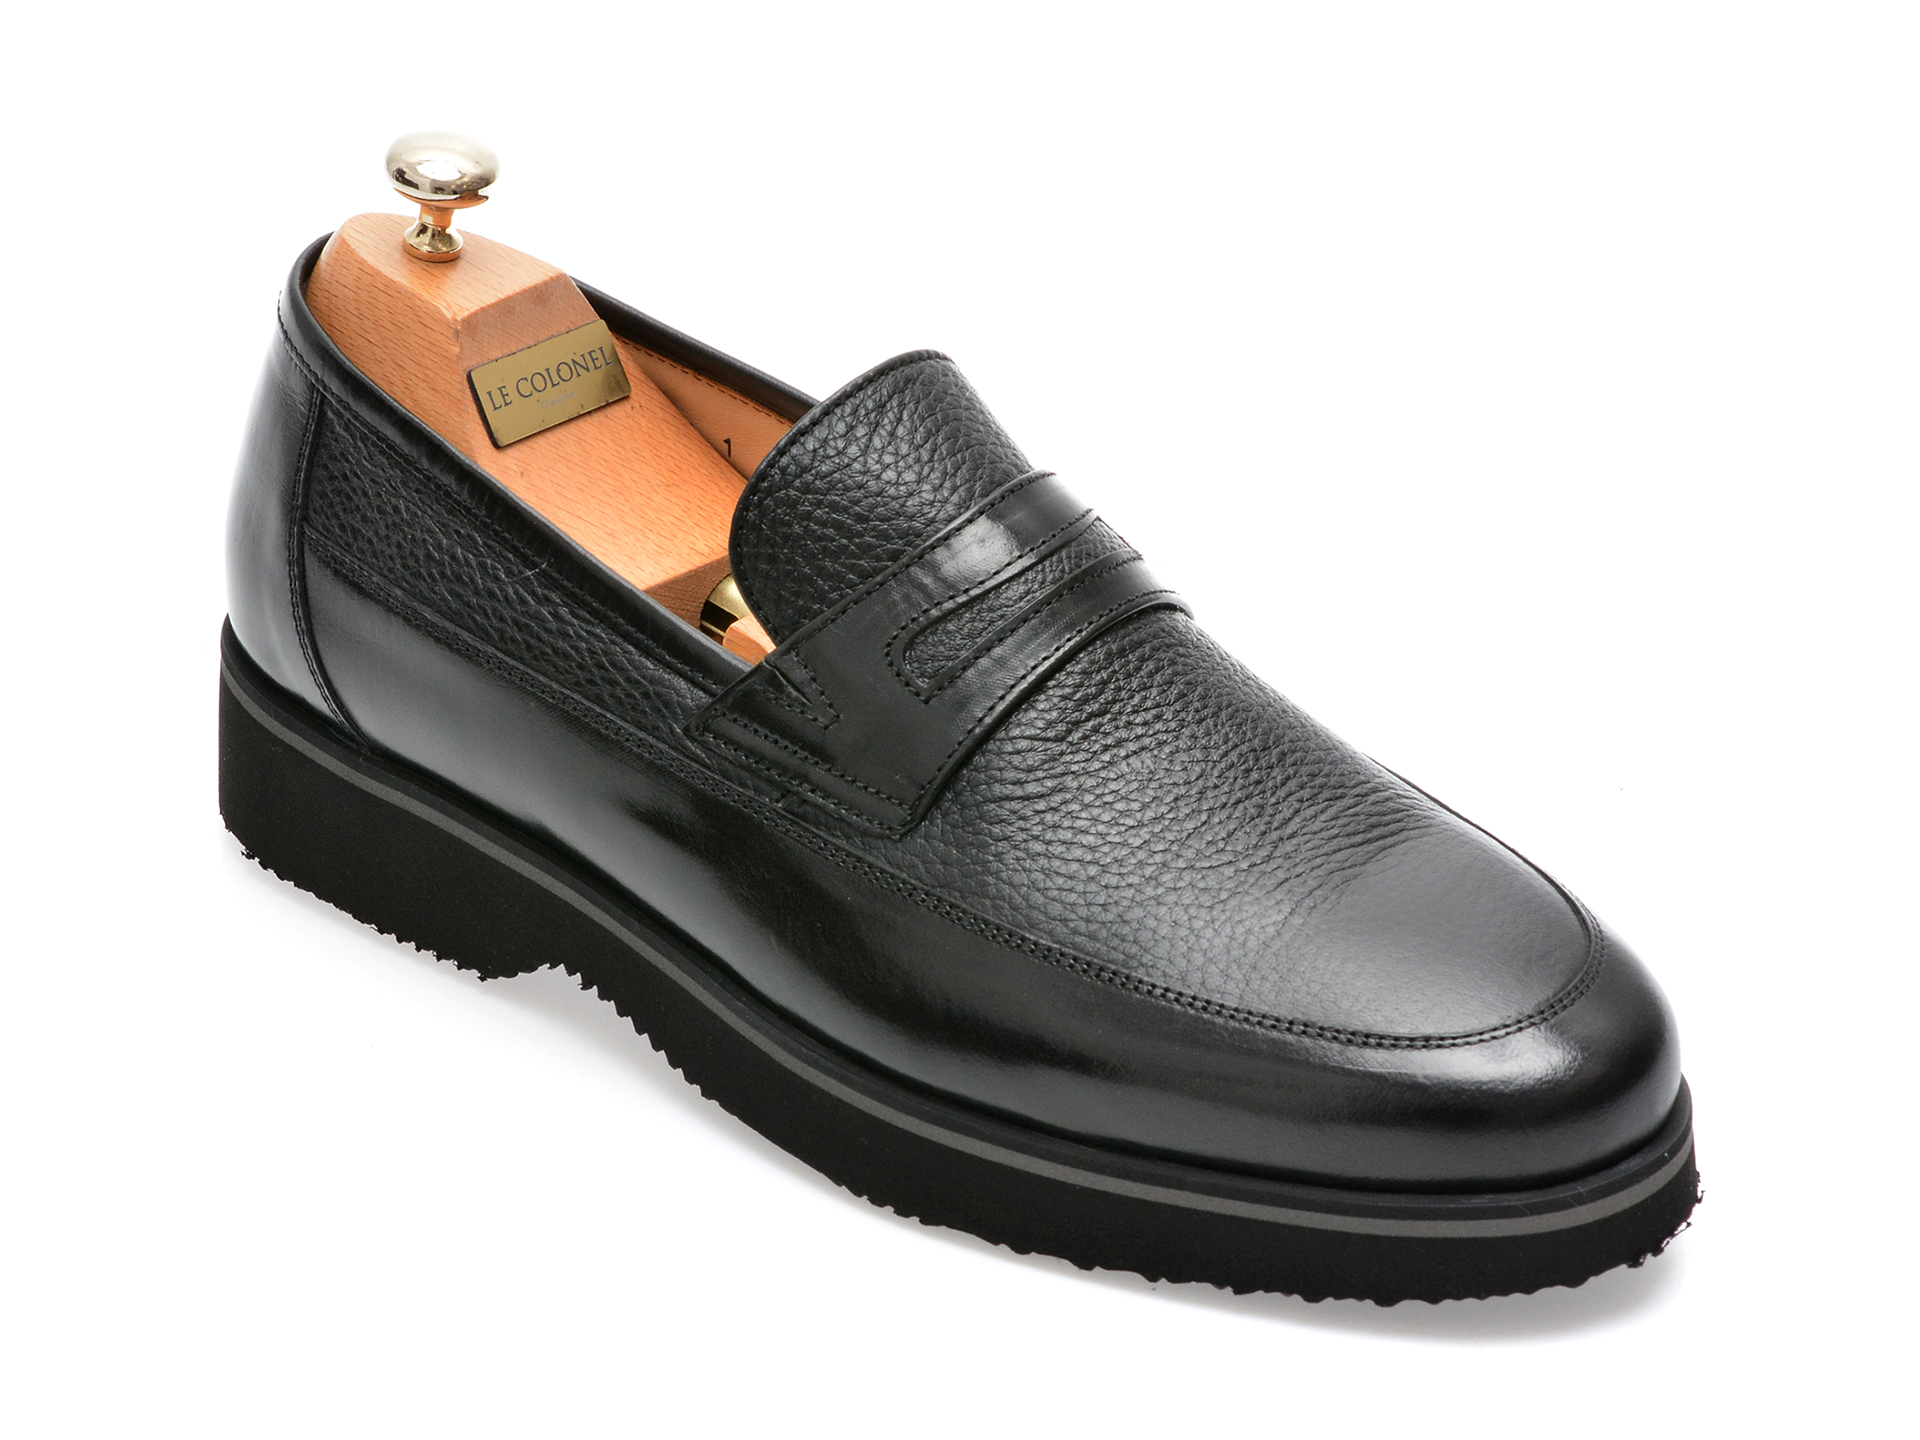 Pantofi LE COLONEL negri, 66101, din piele naturala barbati 2023-02-03